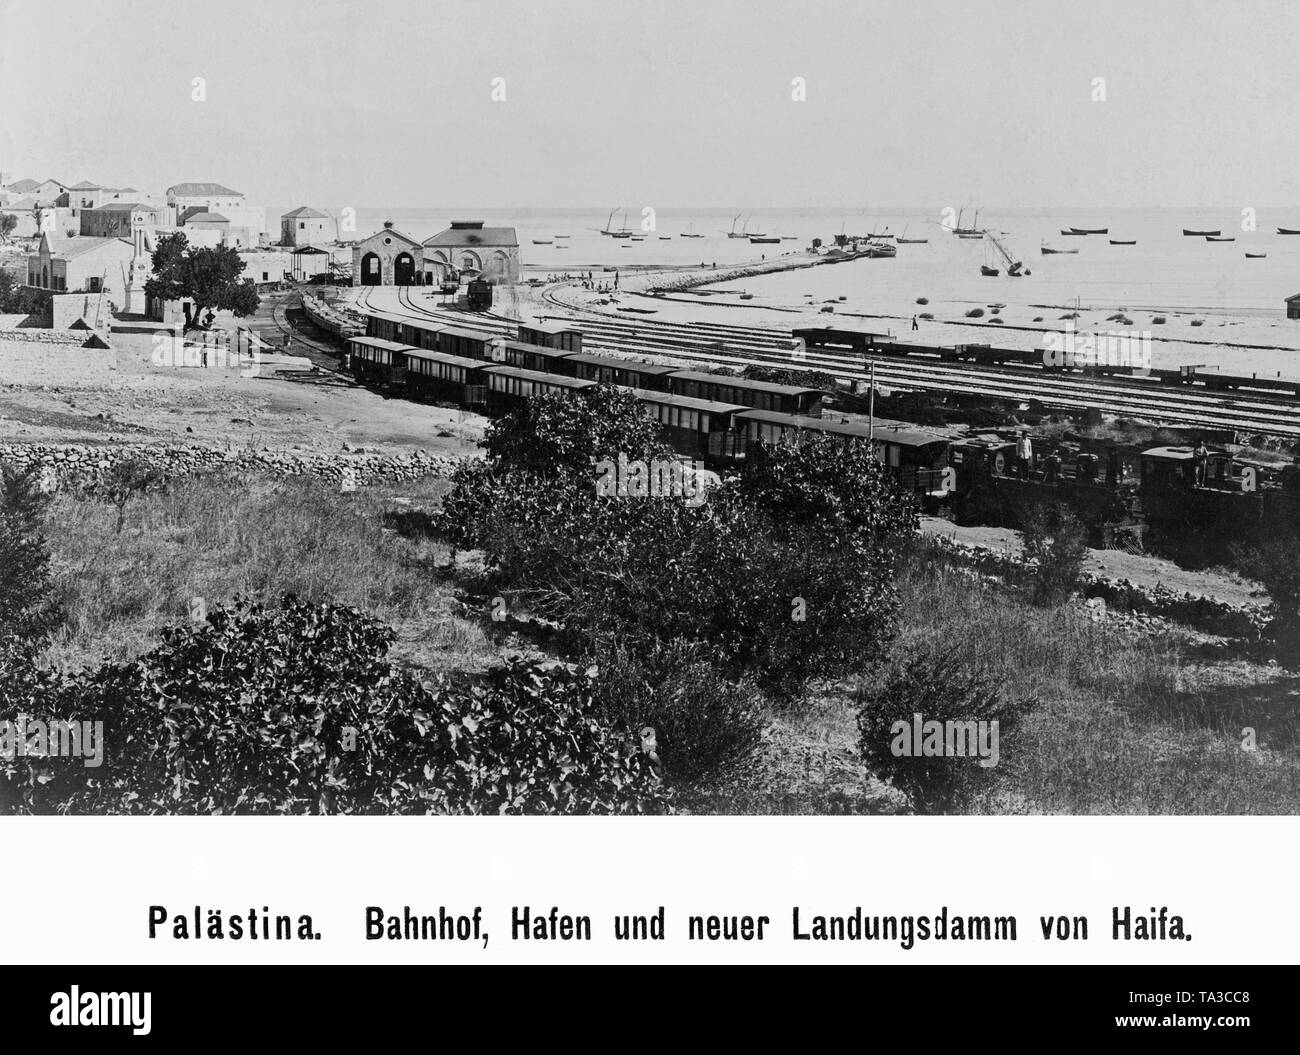 Der Bahnhof und der Hafen von Haifa im heutigen Israel. Zur Zeit des britischen Mandats in Palästina, Haifa, war der wichtigste Mediterranean Port des Mandats. Stockfoto